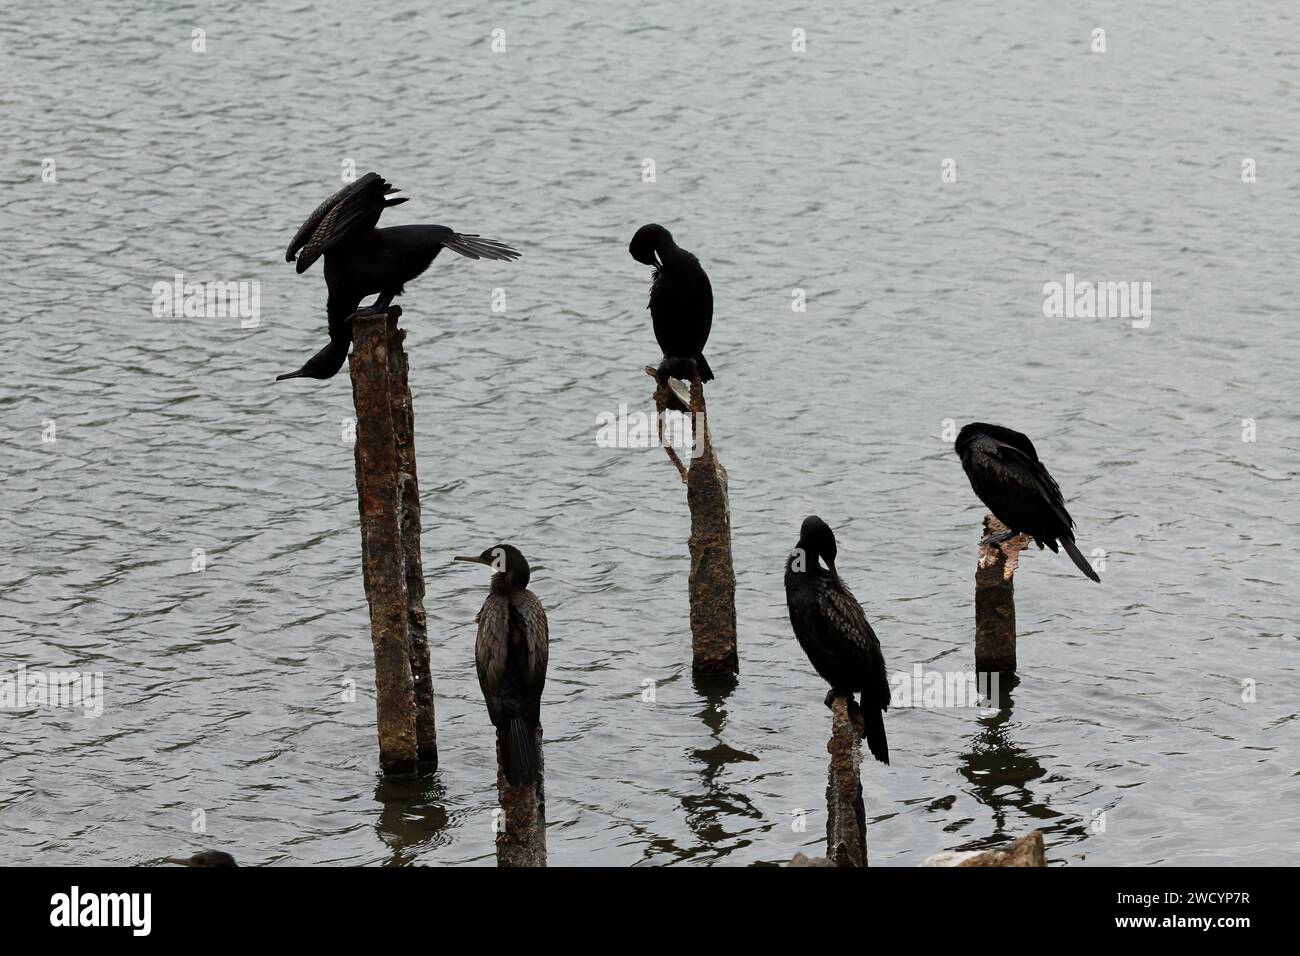 Gruppe von Kormoranvögeln, die auf Säulen in der Mitte des Sees stehen. Einer von ihnen steht auf dem Kopf Stockfoto